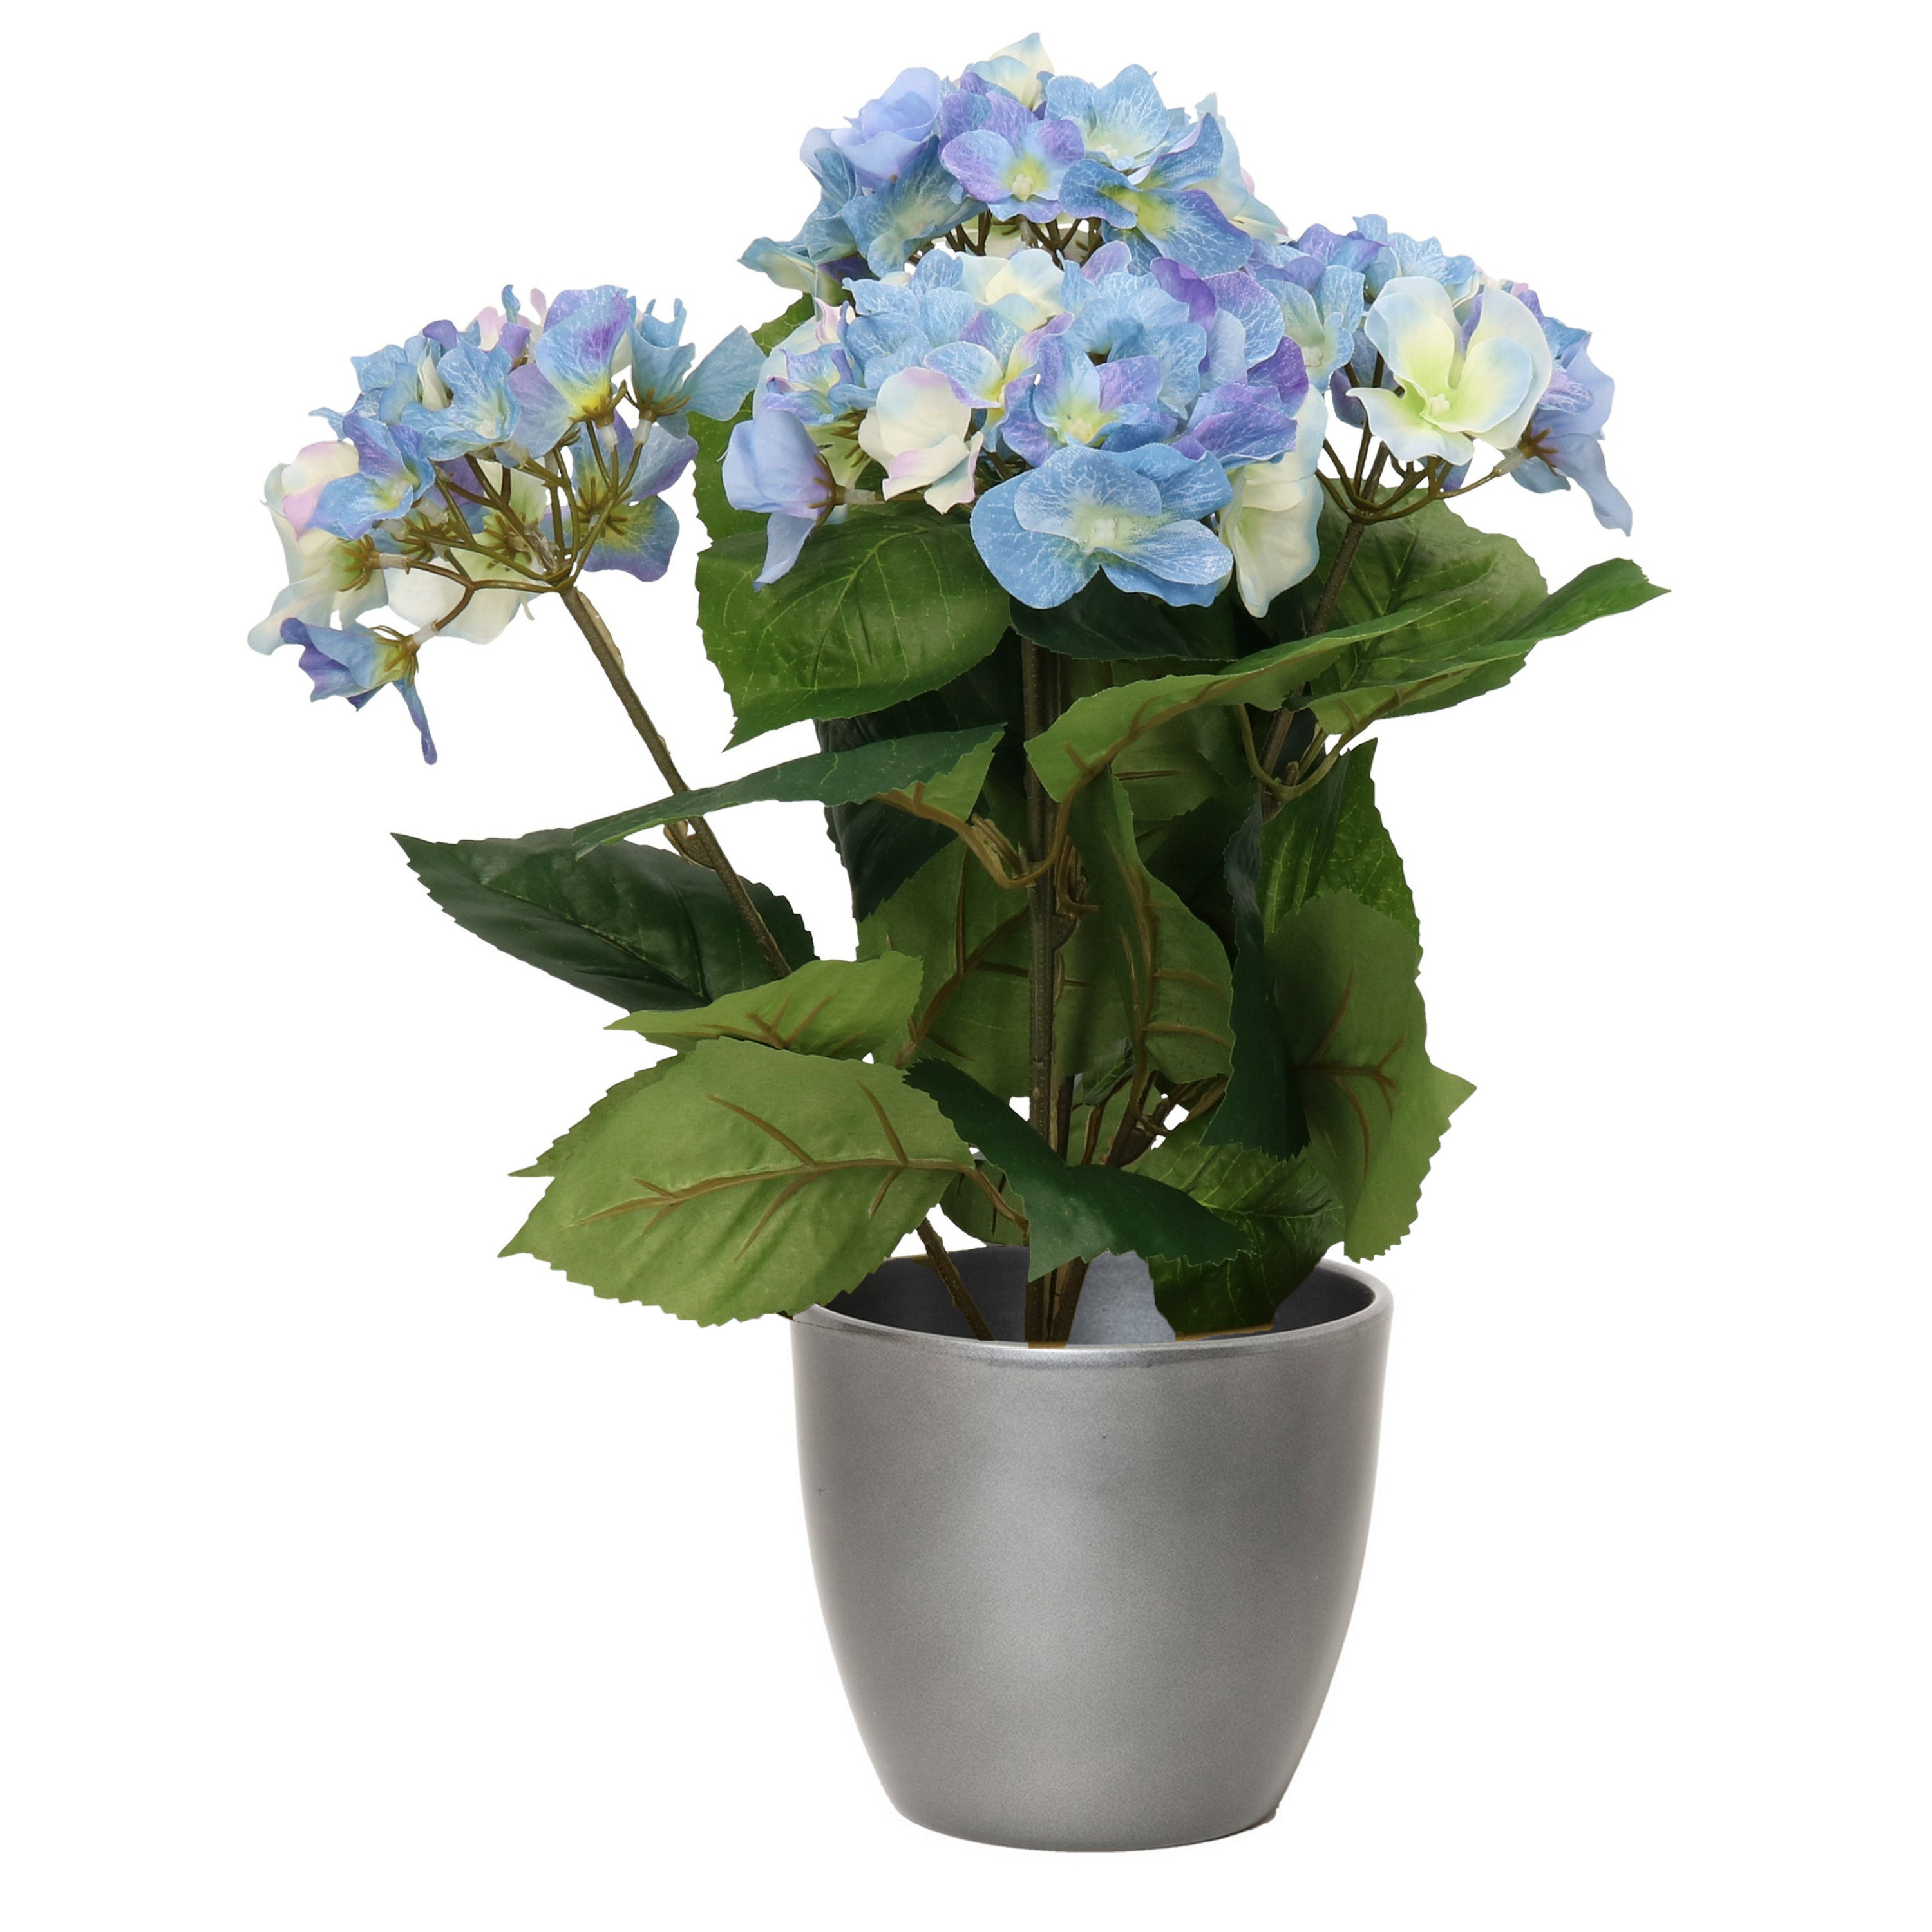 Hortensia kunstplant met bloemen blauw in pot metallic zilver 40 cm hoog